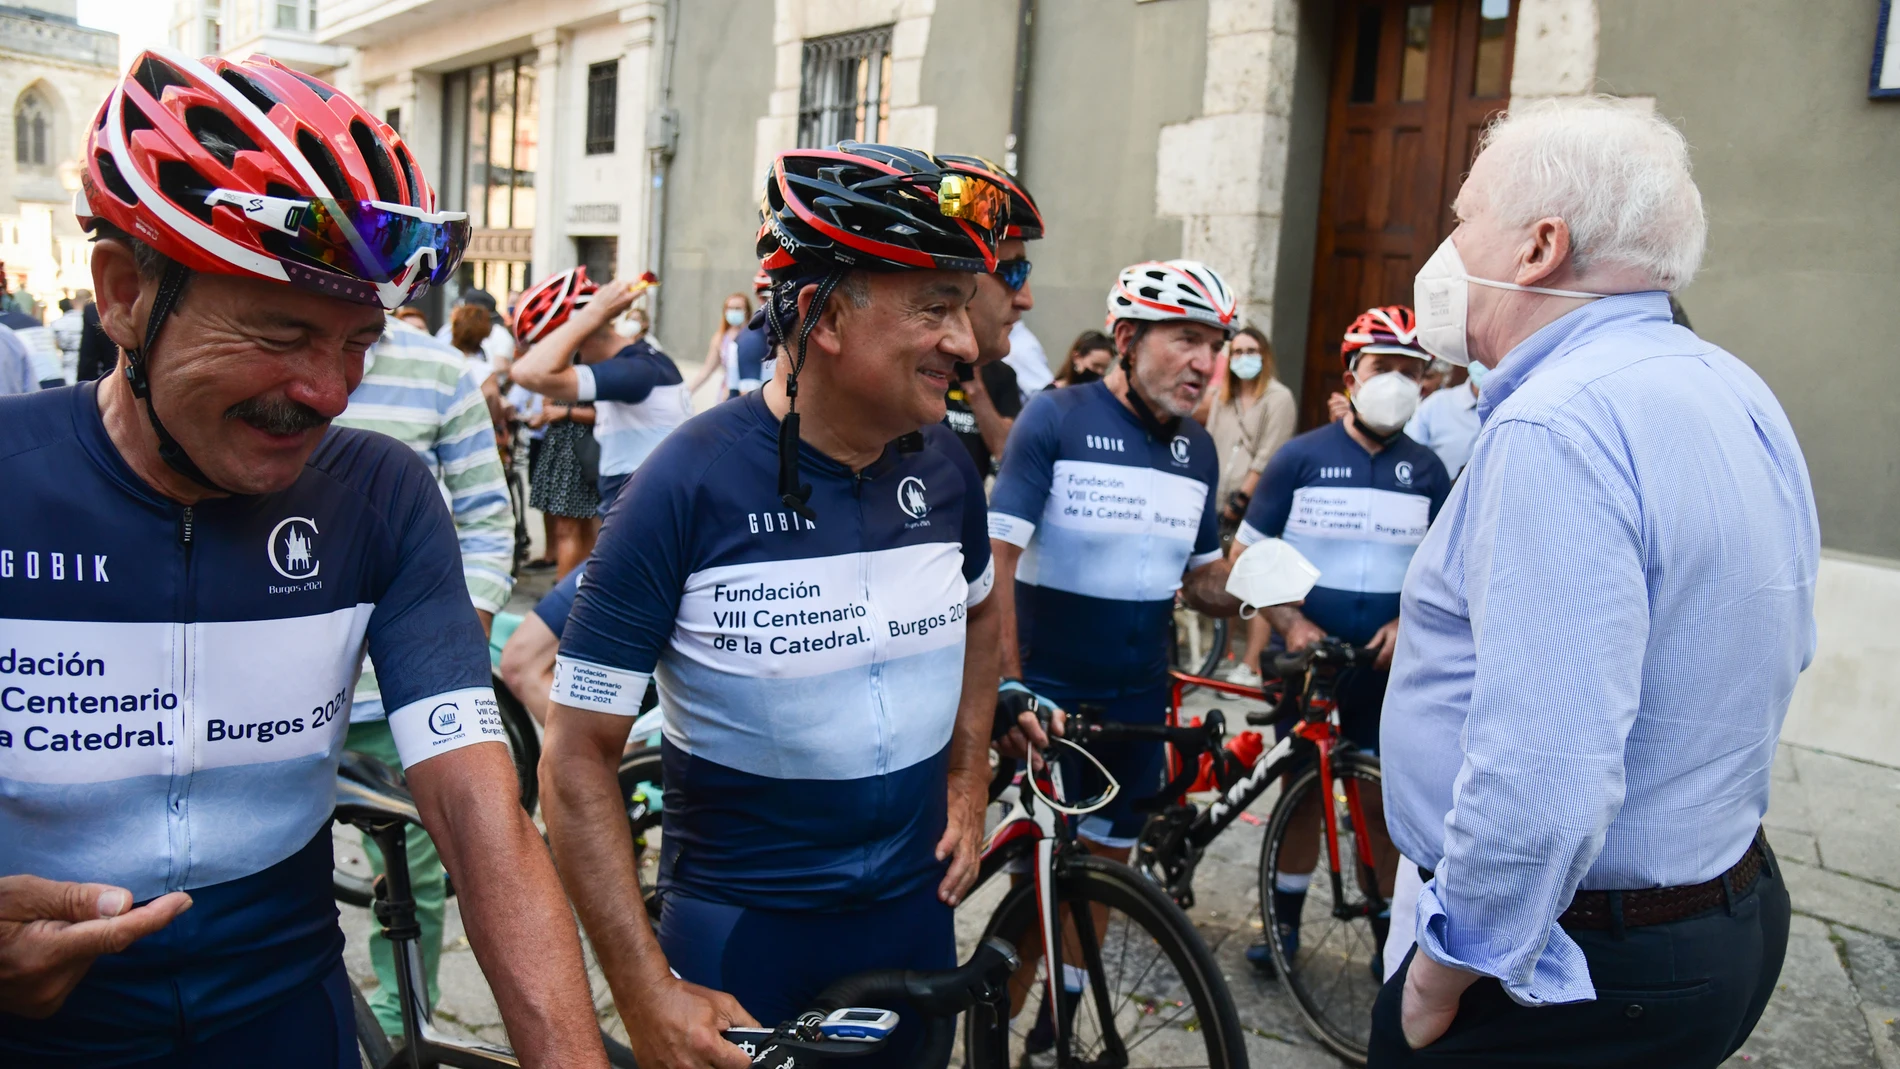 Llegada a la Catedral de Burgos de los ciclistas de la ruta ''800 años-800 km'' , dentro de los actos de conmemoración del VIII Centenario de la Catedral. Burgos 2021